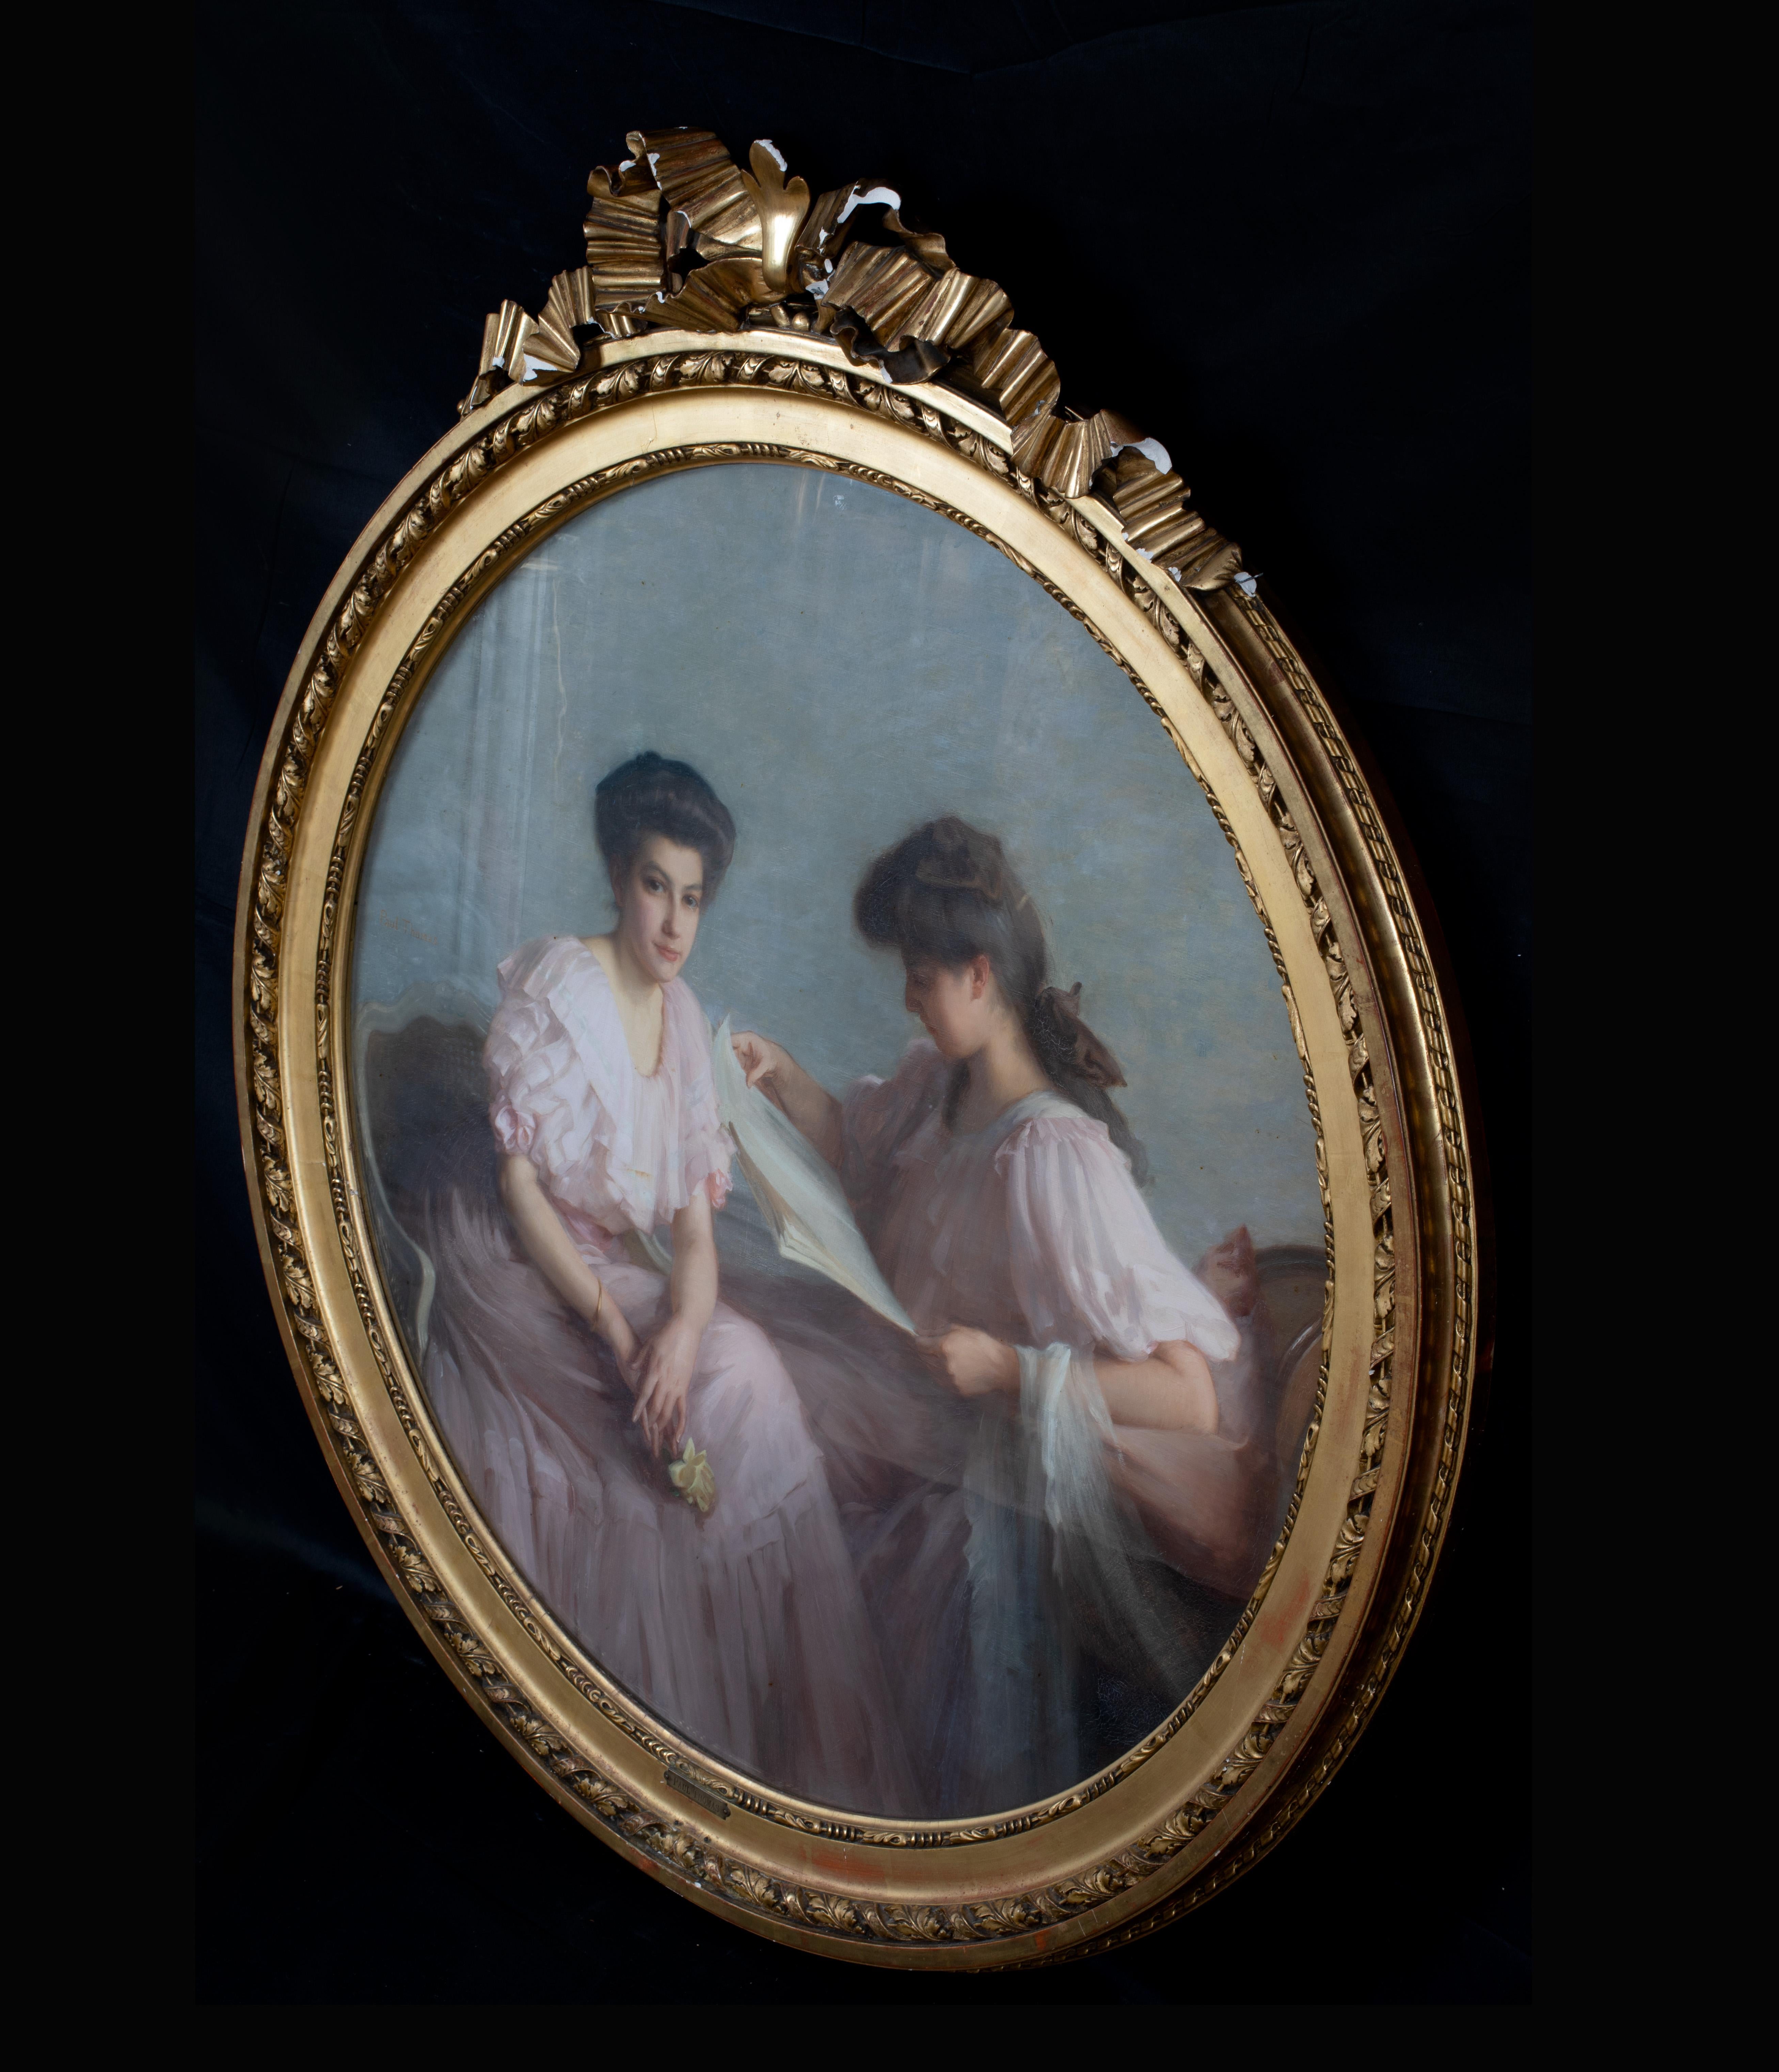 Portrait Of Two Ladies, Paris, 19th Century - Black Portrait Painting by Unknown